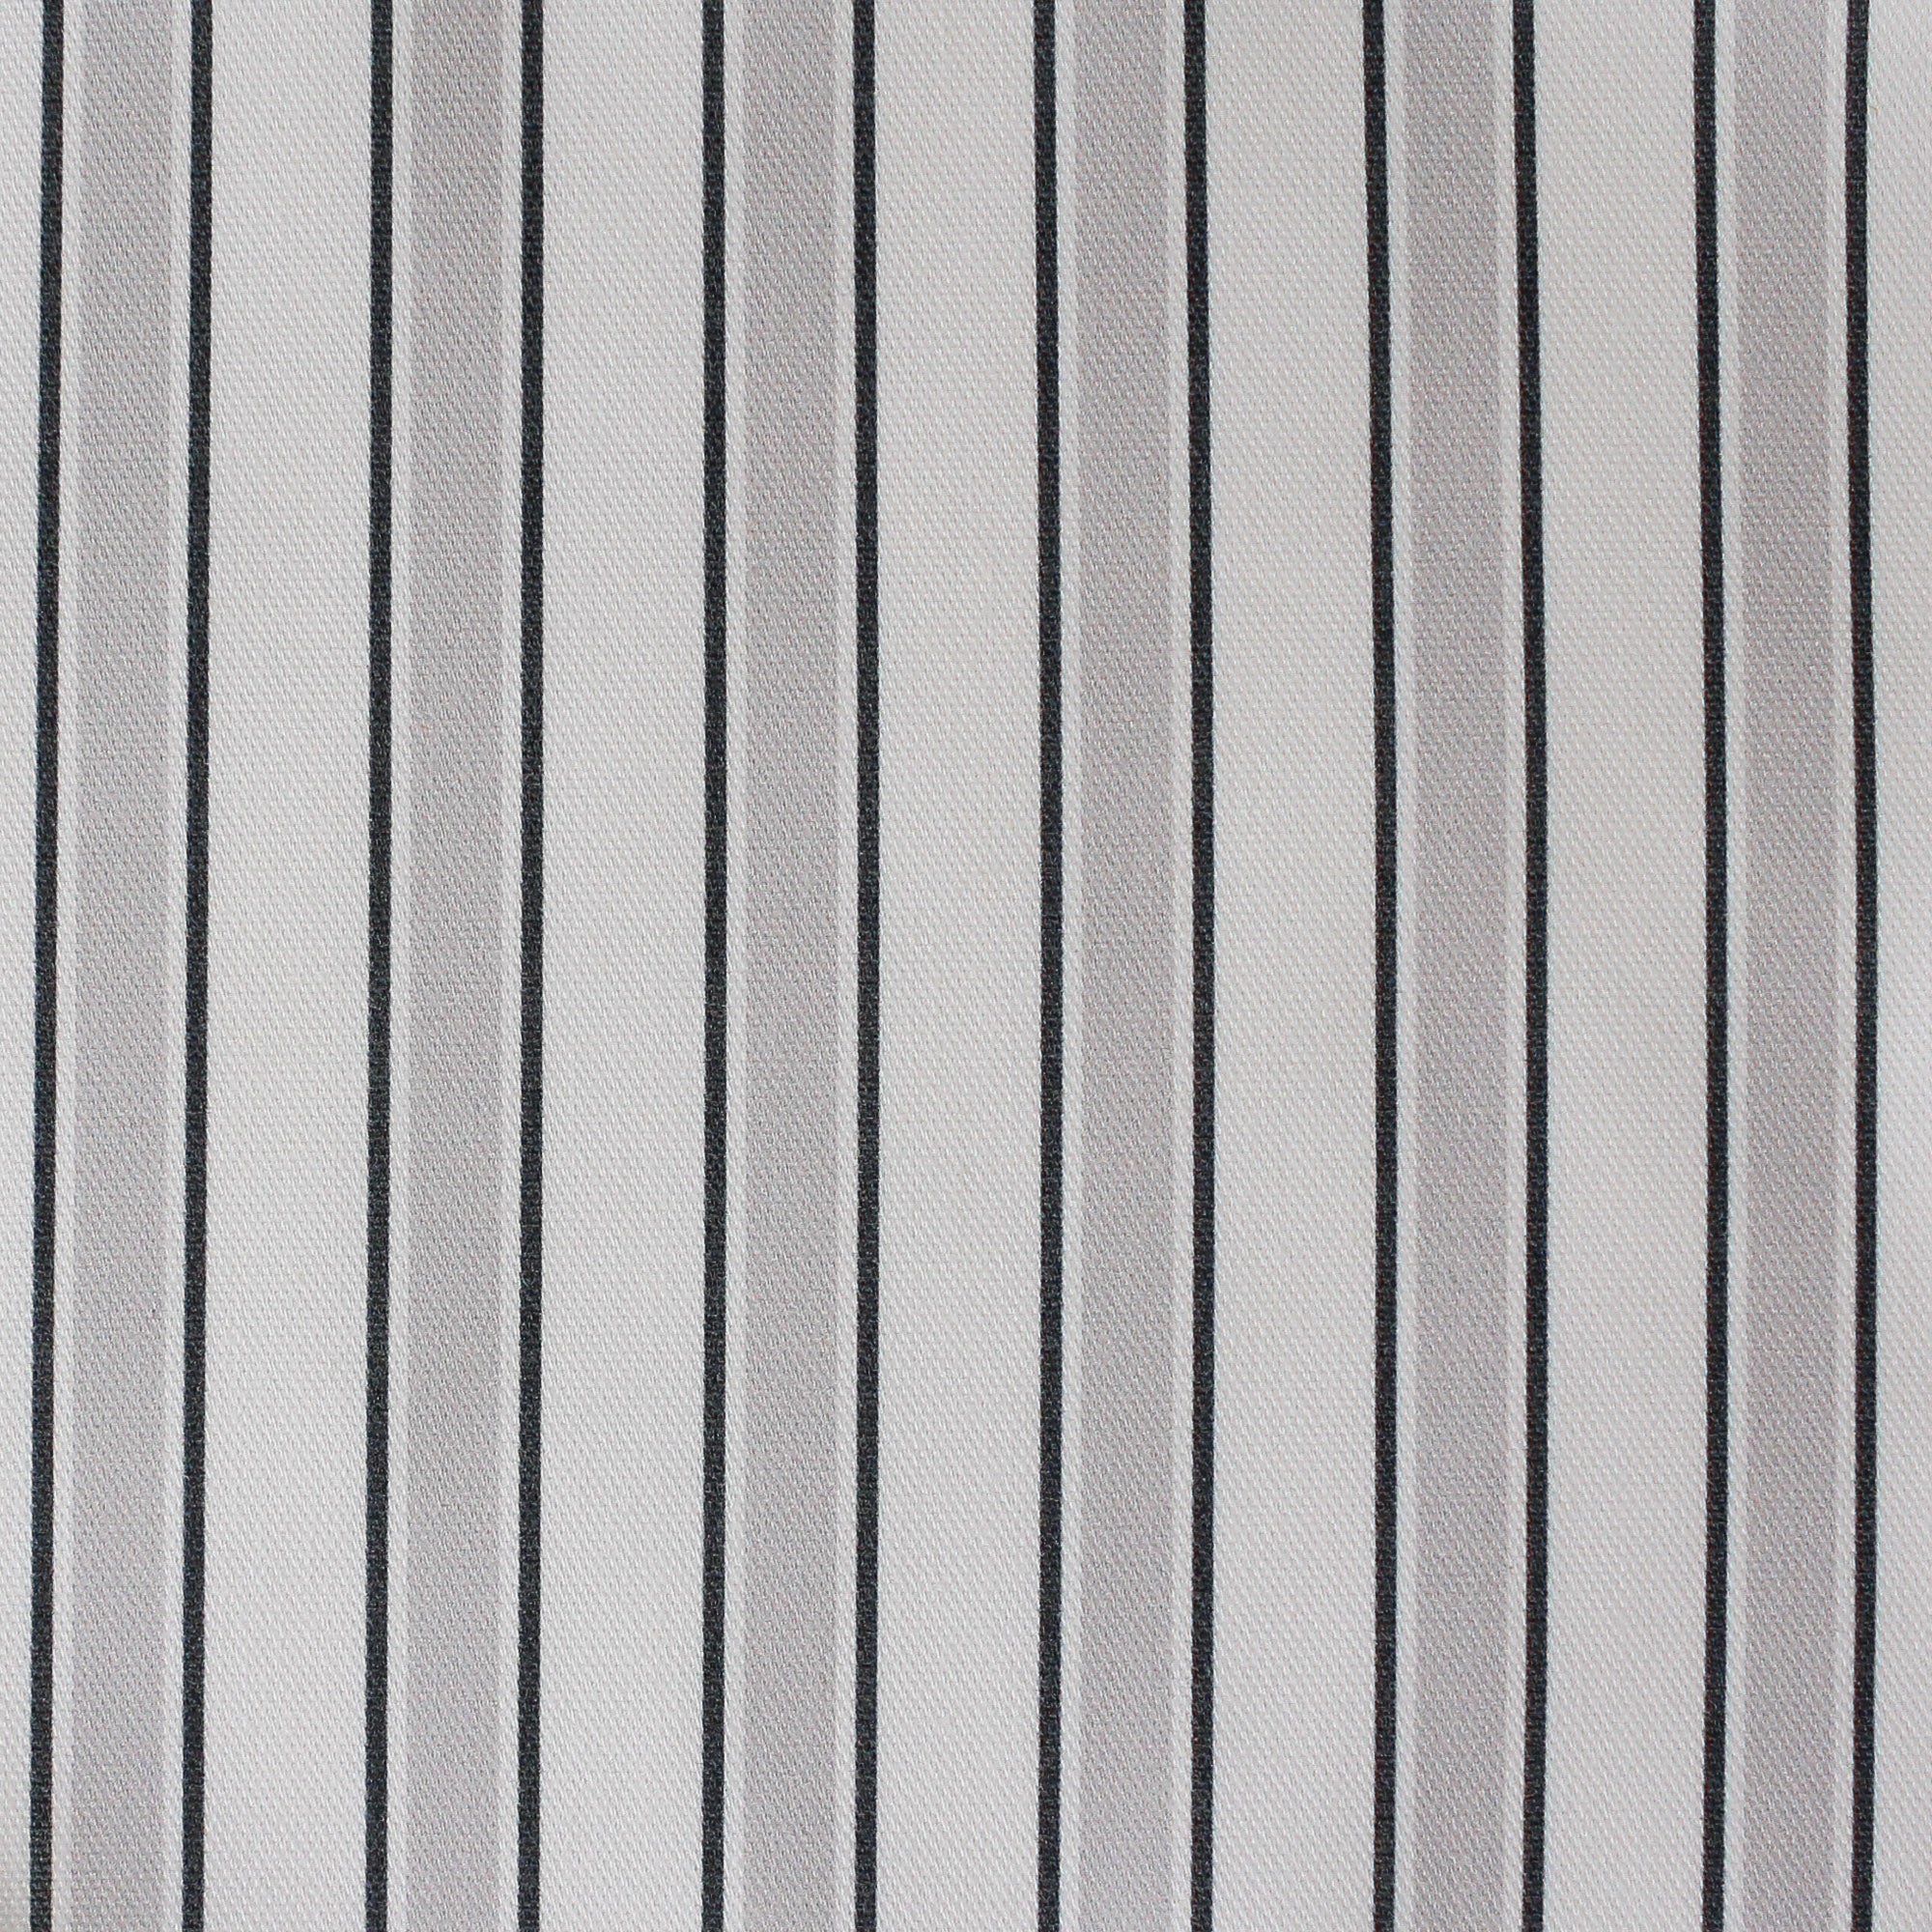 Regatta Multi Stripe Fabric - Dove-Graphite - Hydrangea Lane Home